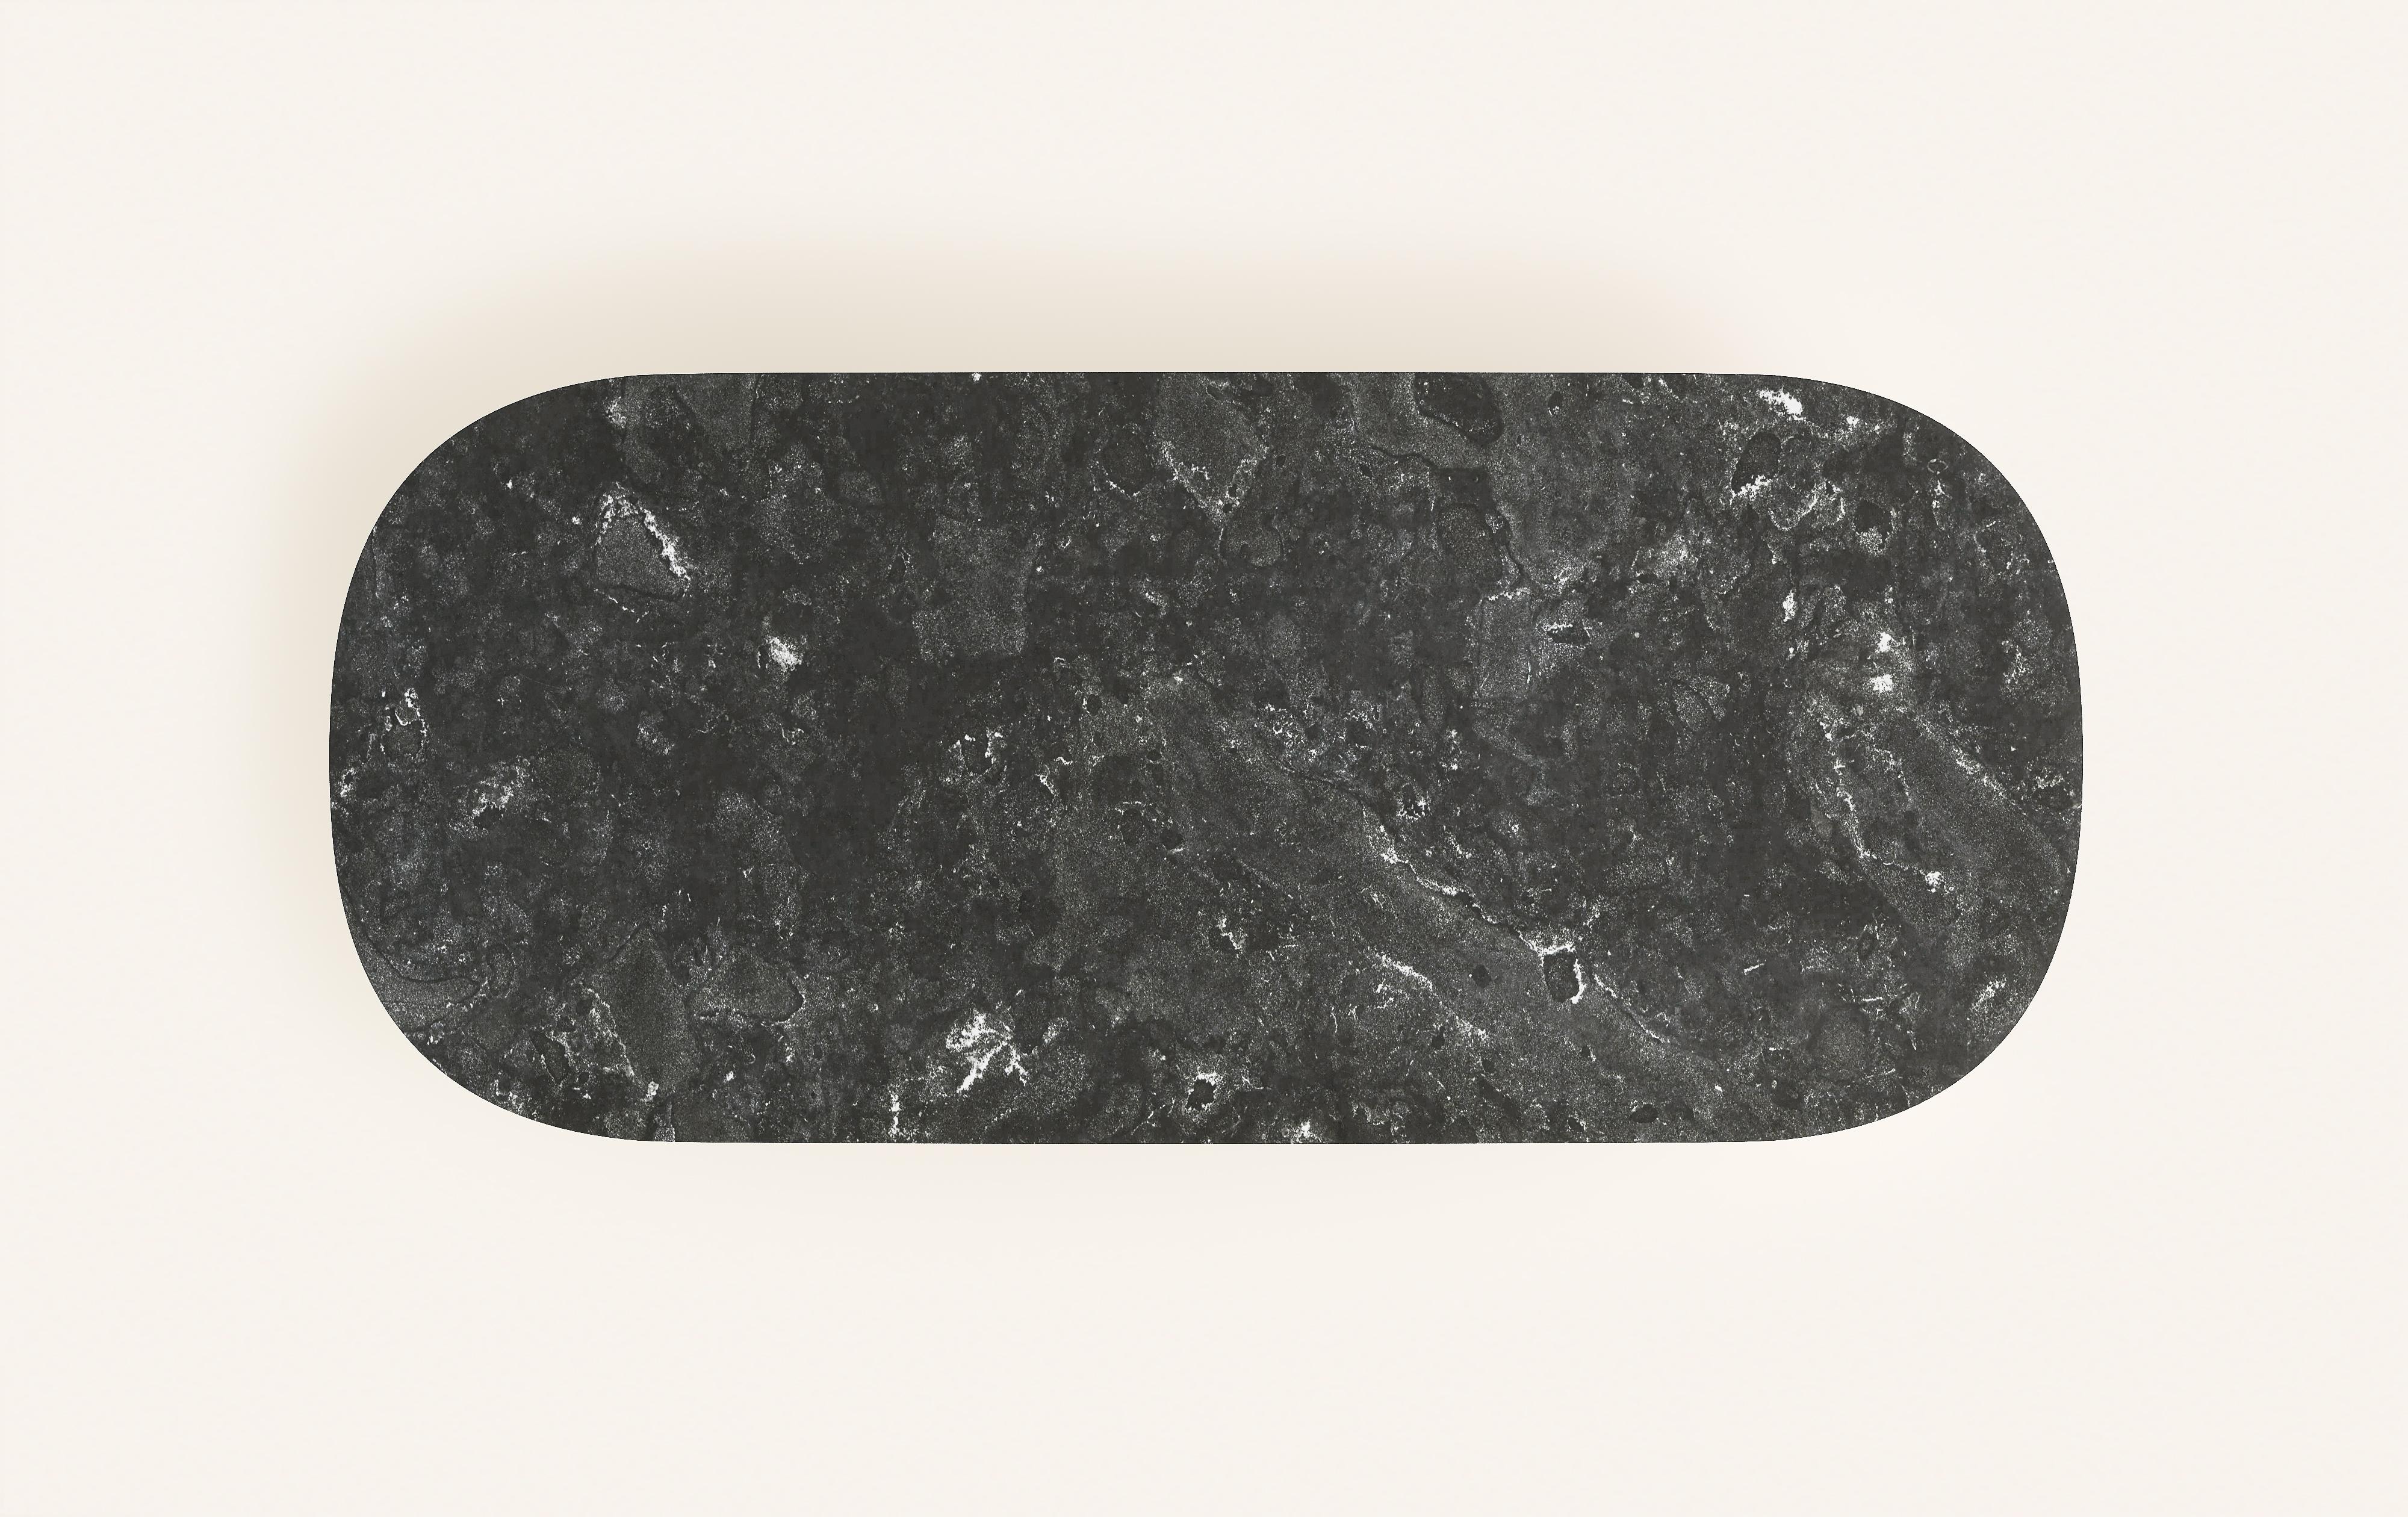 FORM(LA) Cono Oval Dining Table 108”L x 48”W x 30”H Nero Petite Granite In New Condition For Sale In Los Angeles, CA